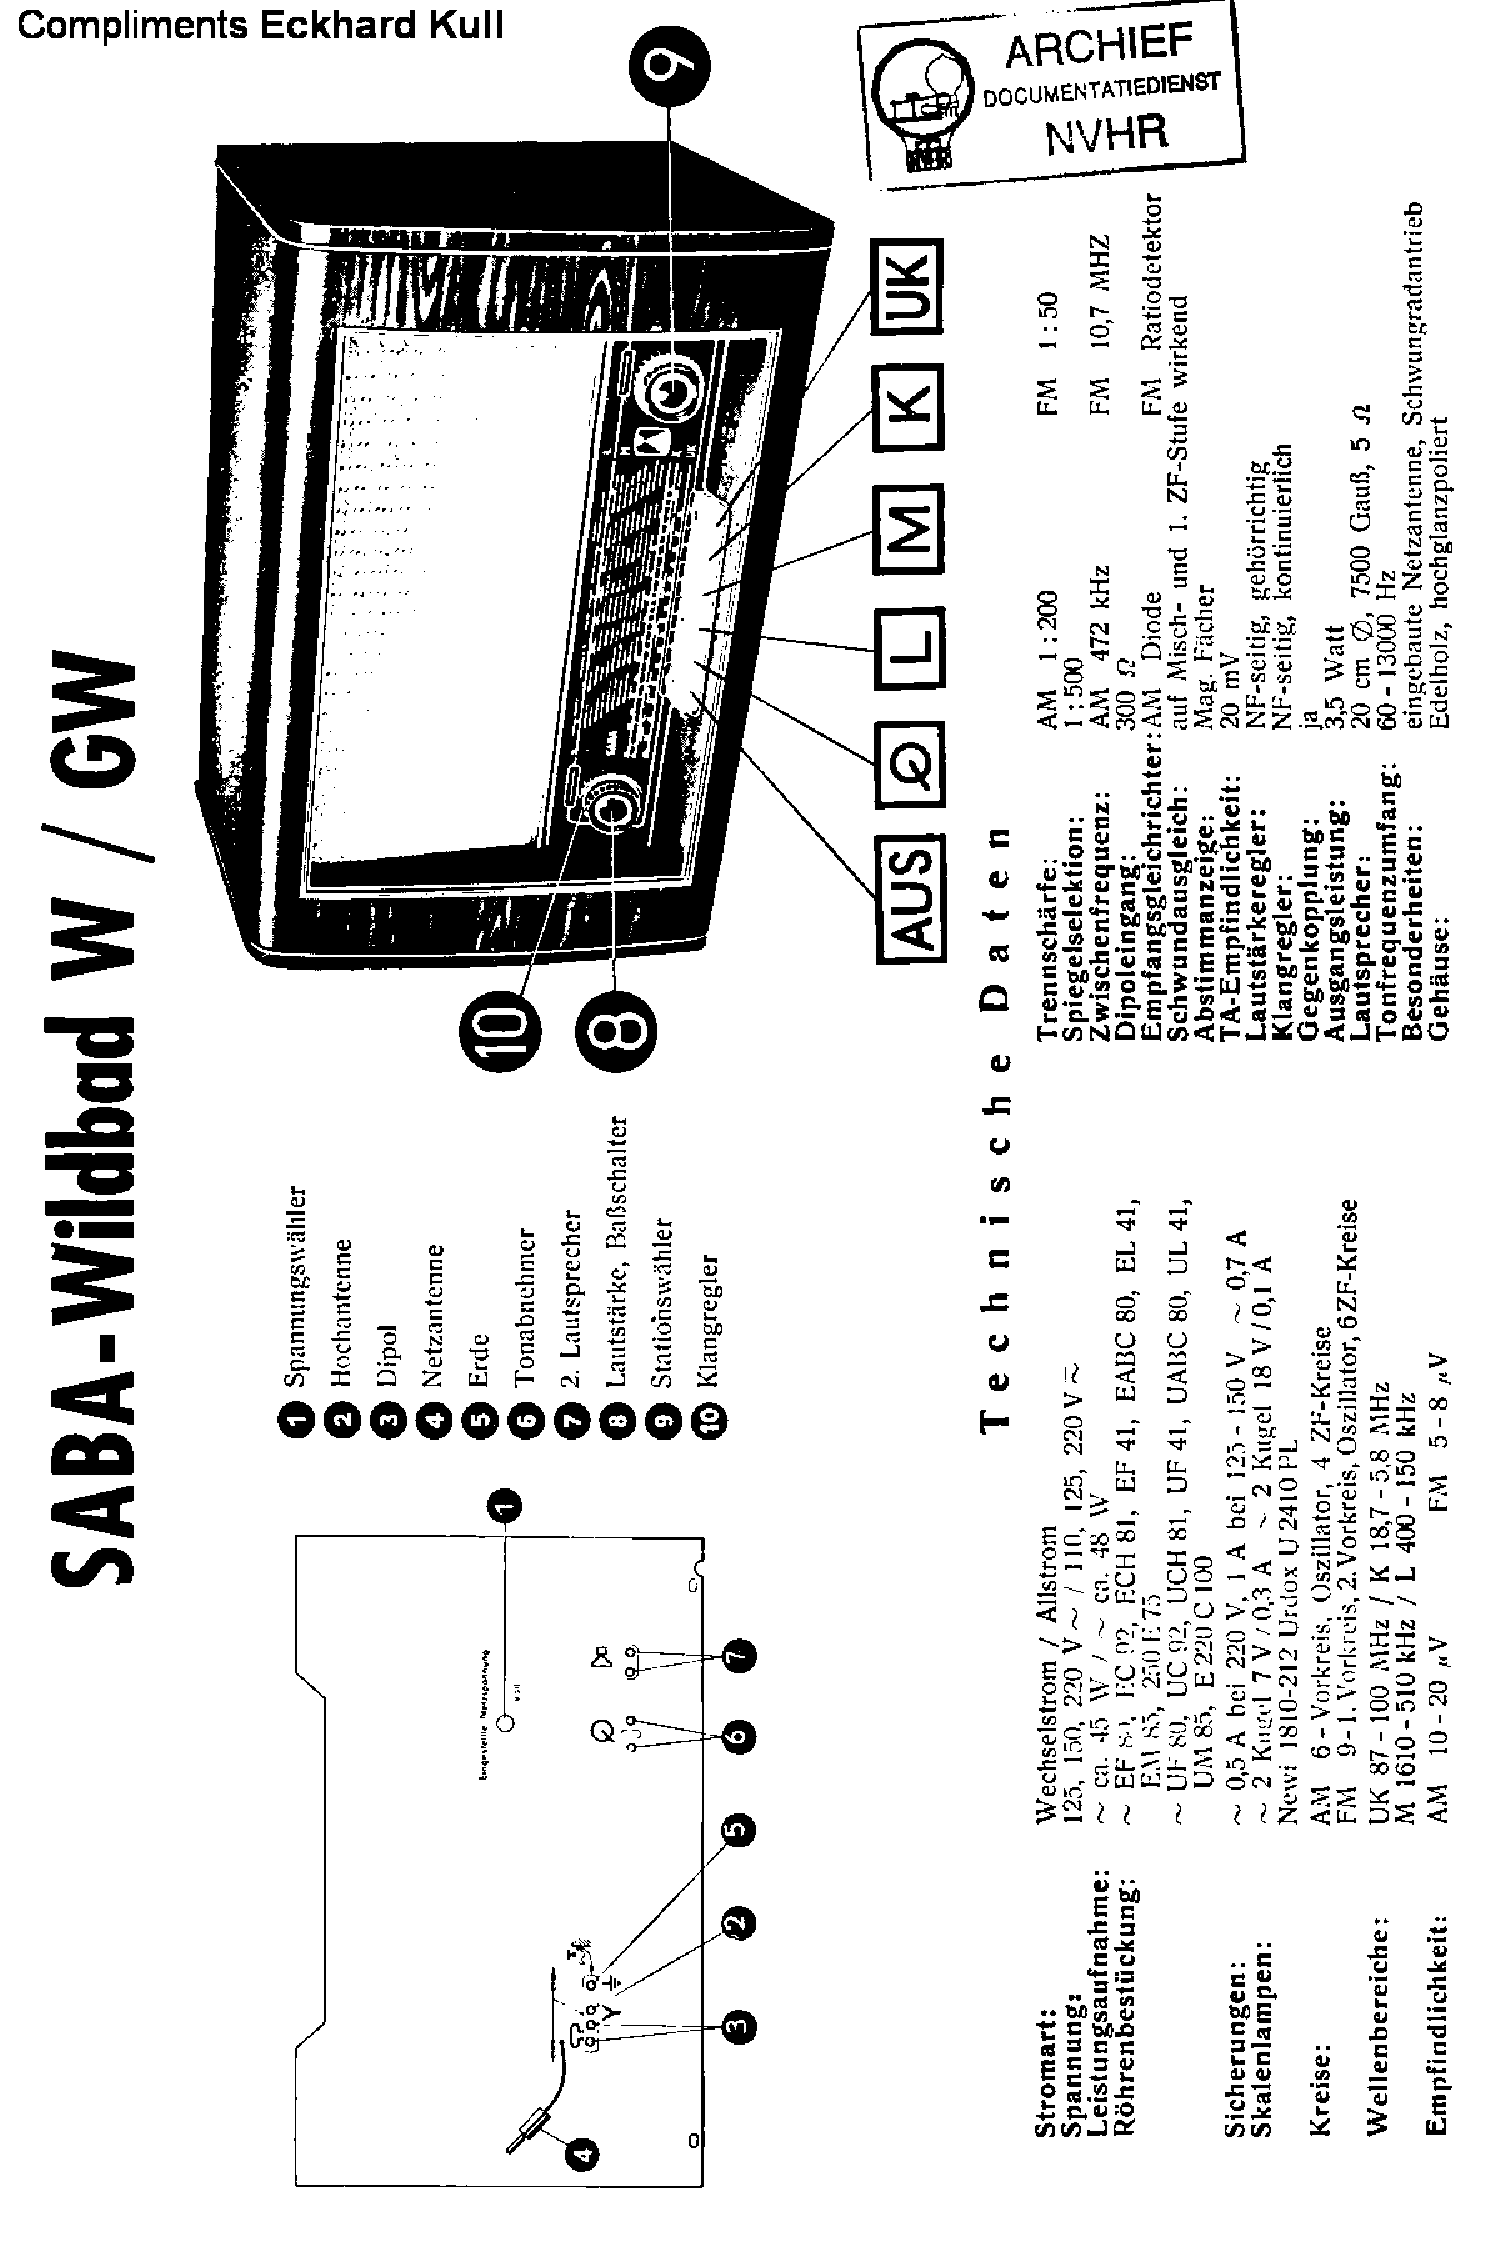 Service Manual-Anleitung für Saba Wildbad W,GW   Baujahr 1952/53 